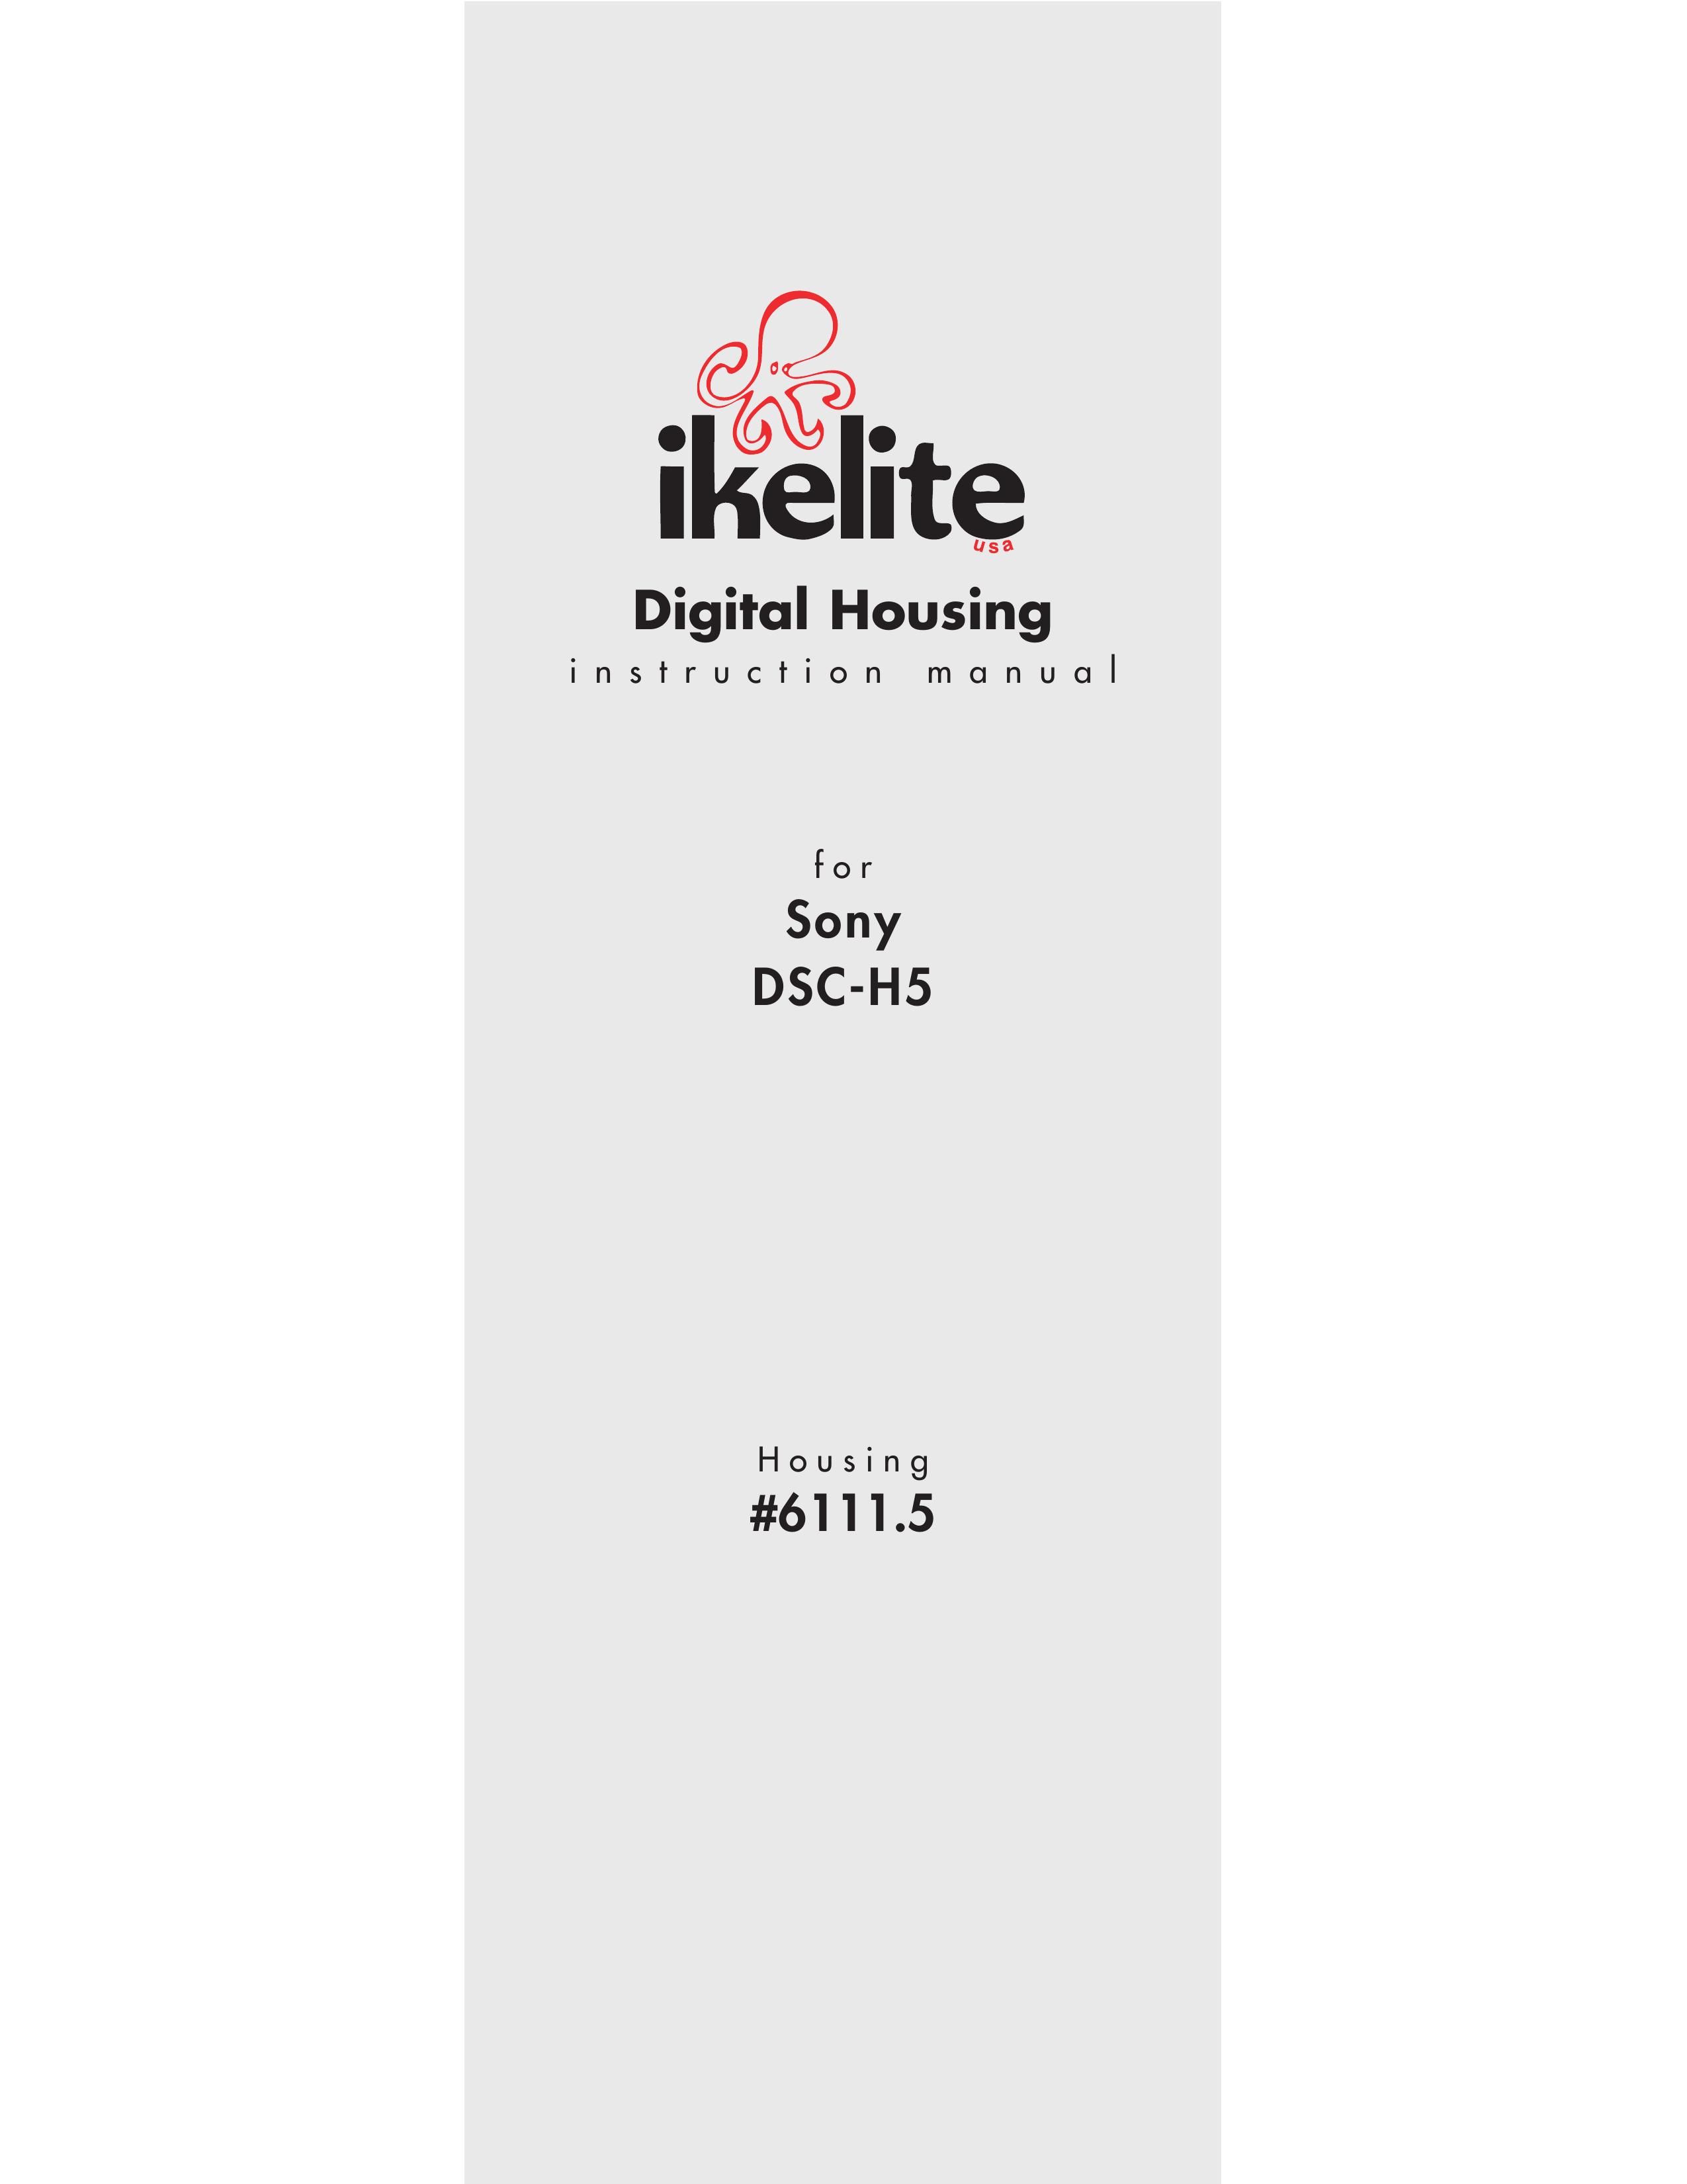 Ikelite DSC-H5 Digital Camera User Manual